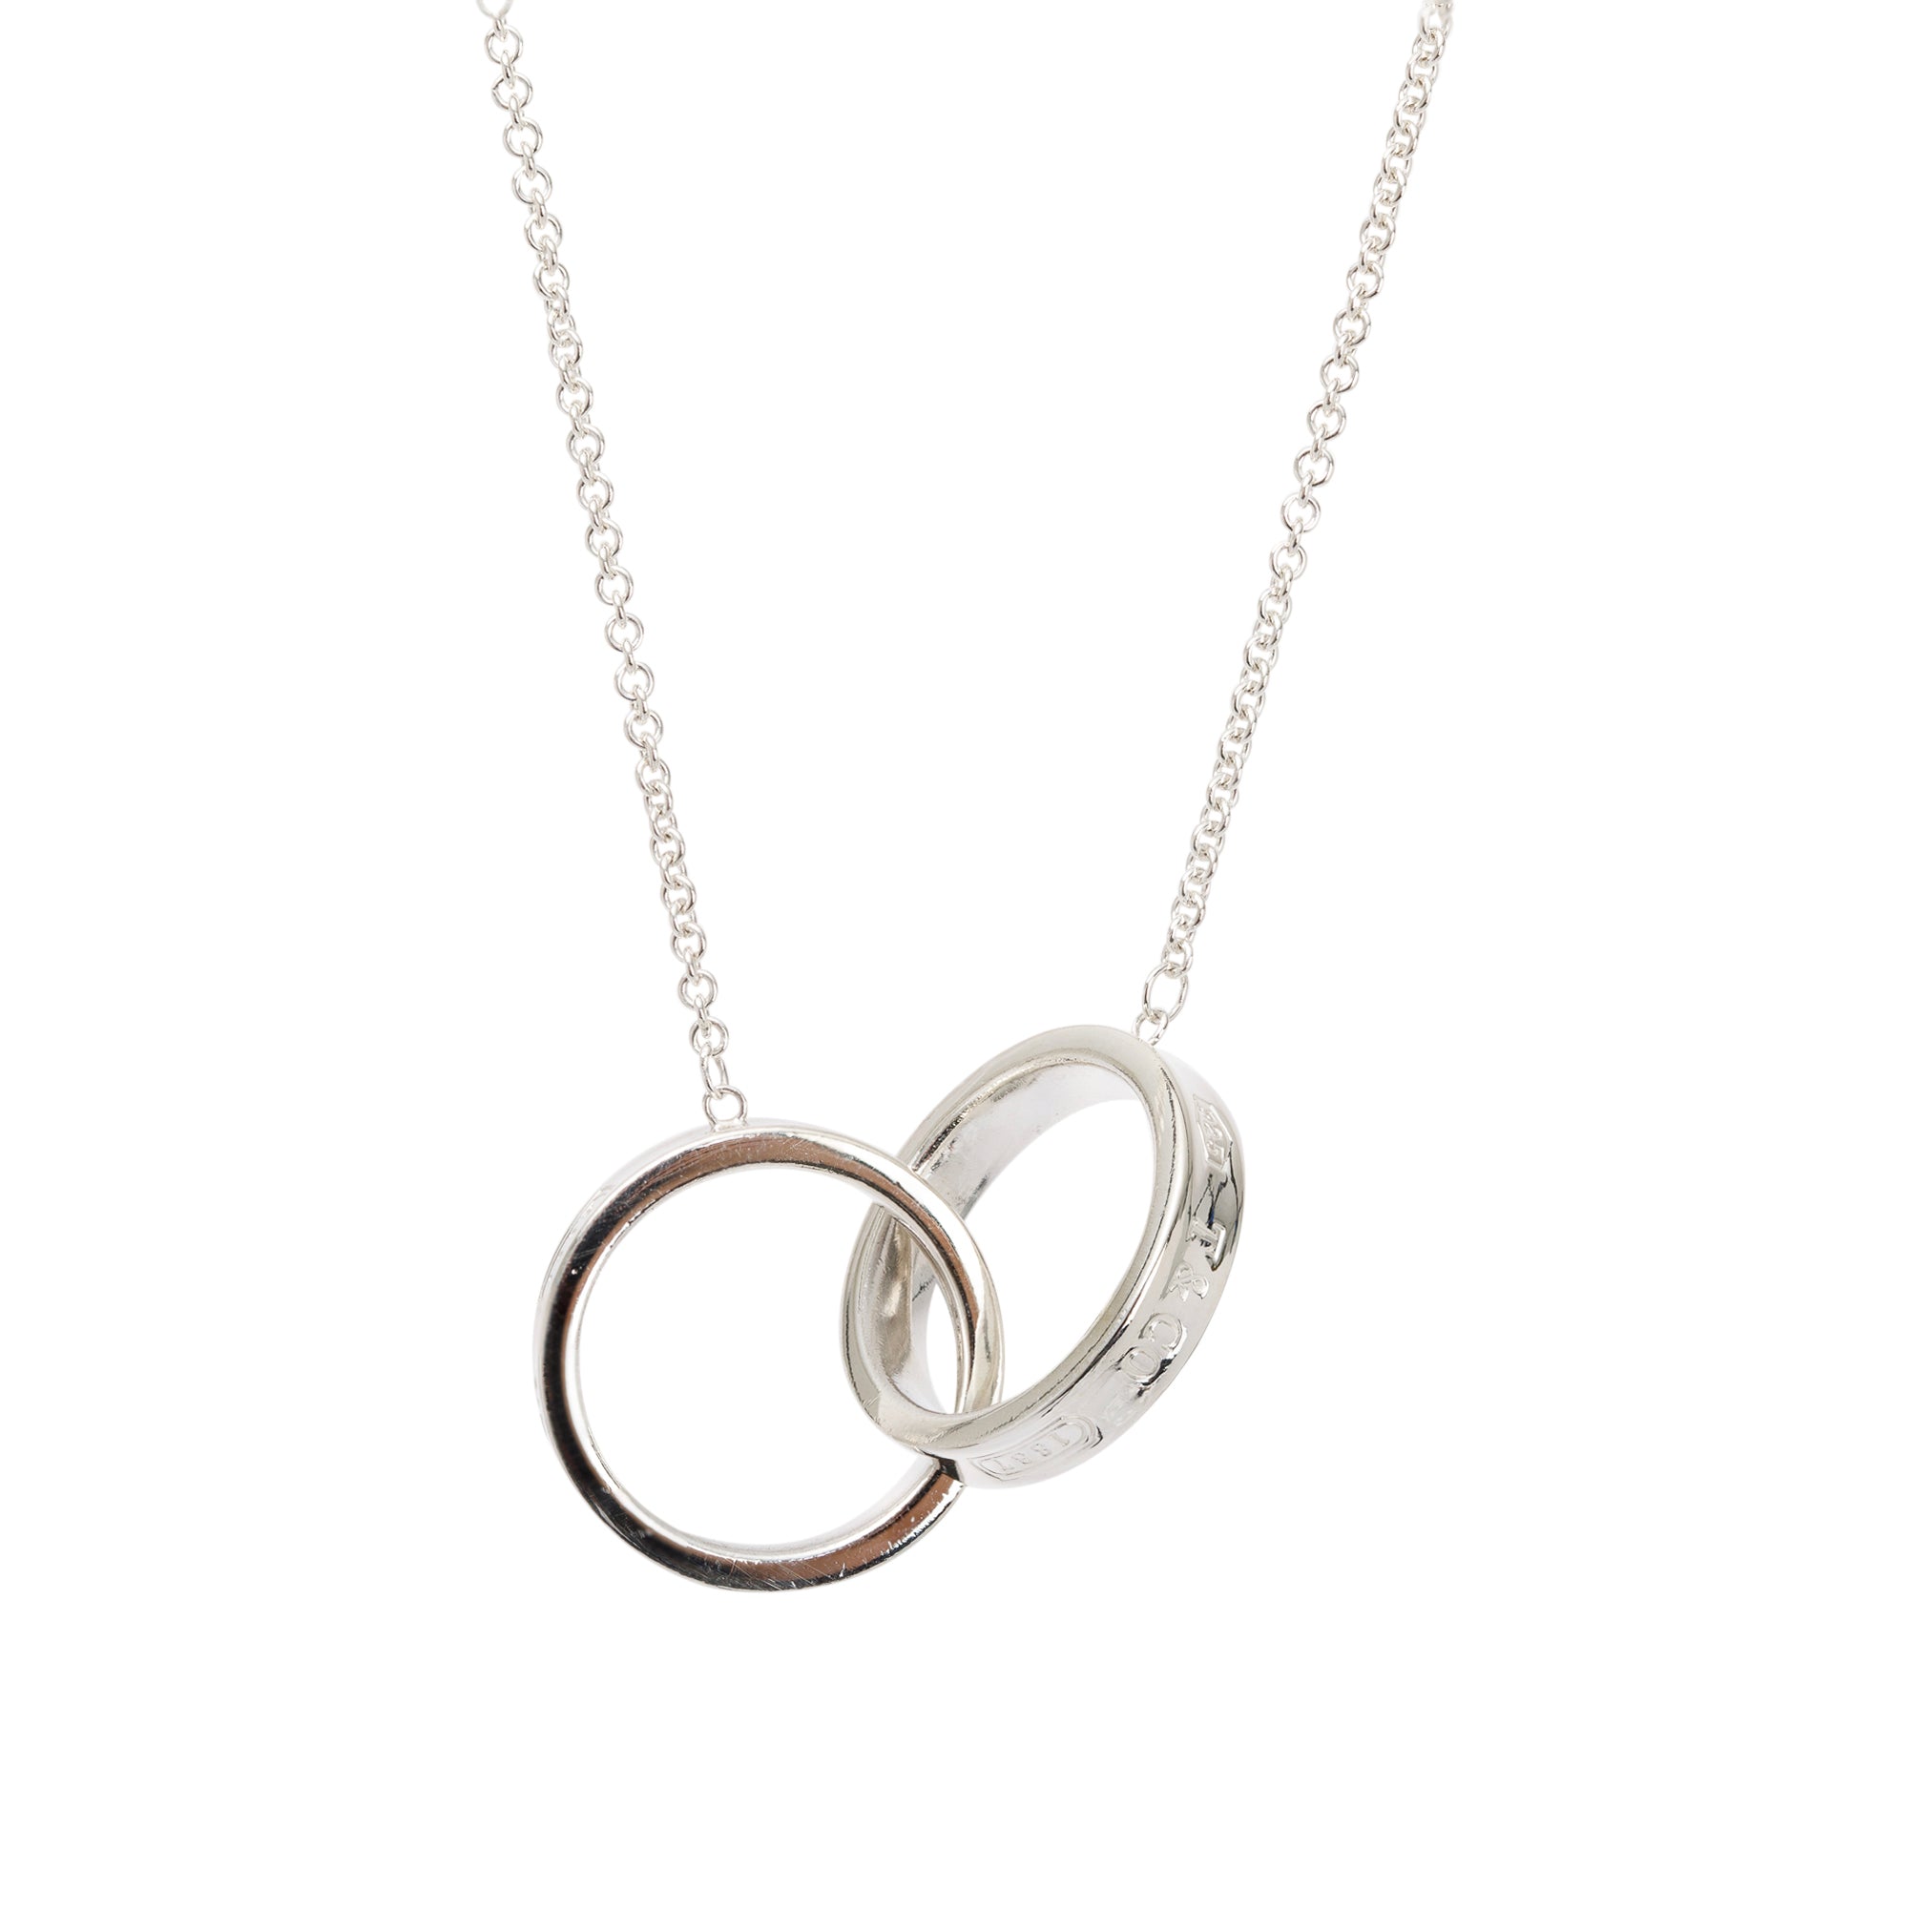 Tiffany Co Medium 1837 Interlocking Circles Pendant Necklace 2 590a32ca 9f22 429b b084 e159a67d5d1d